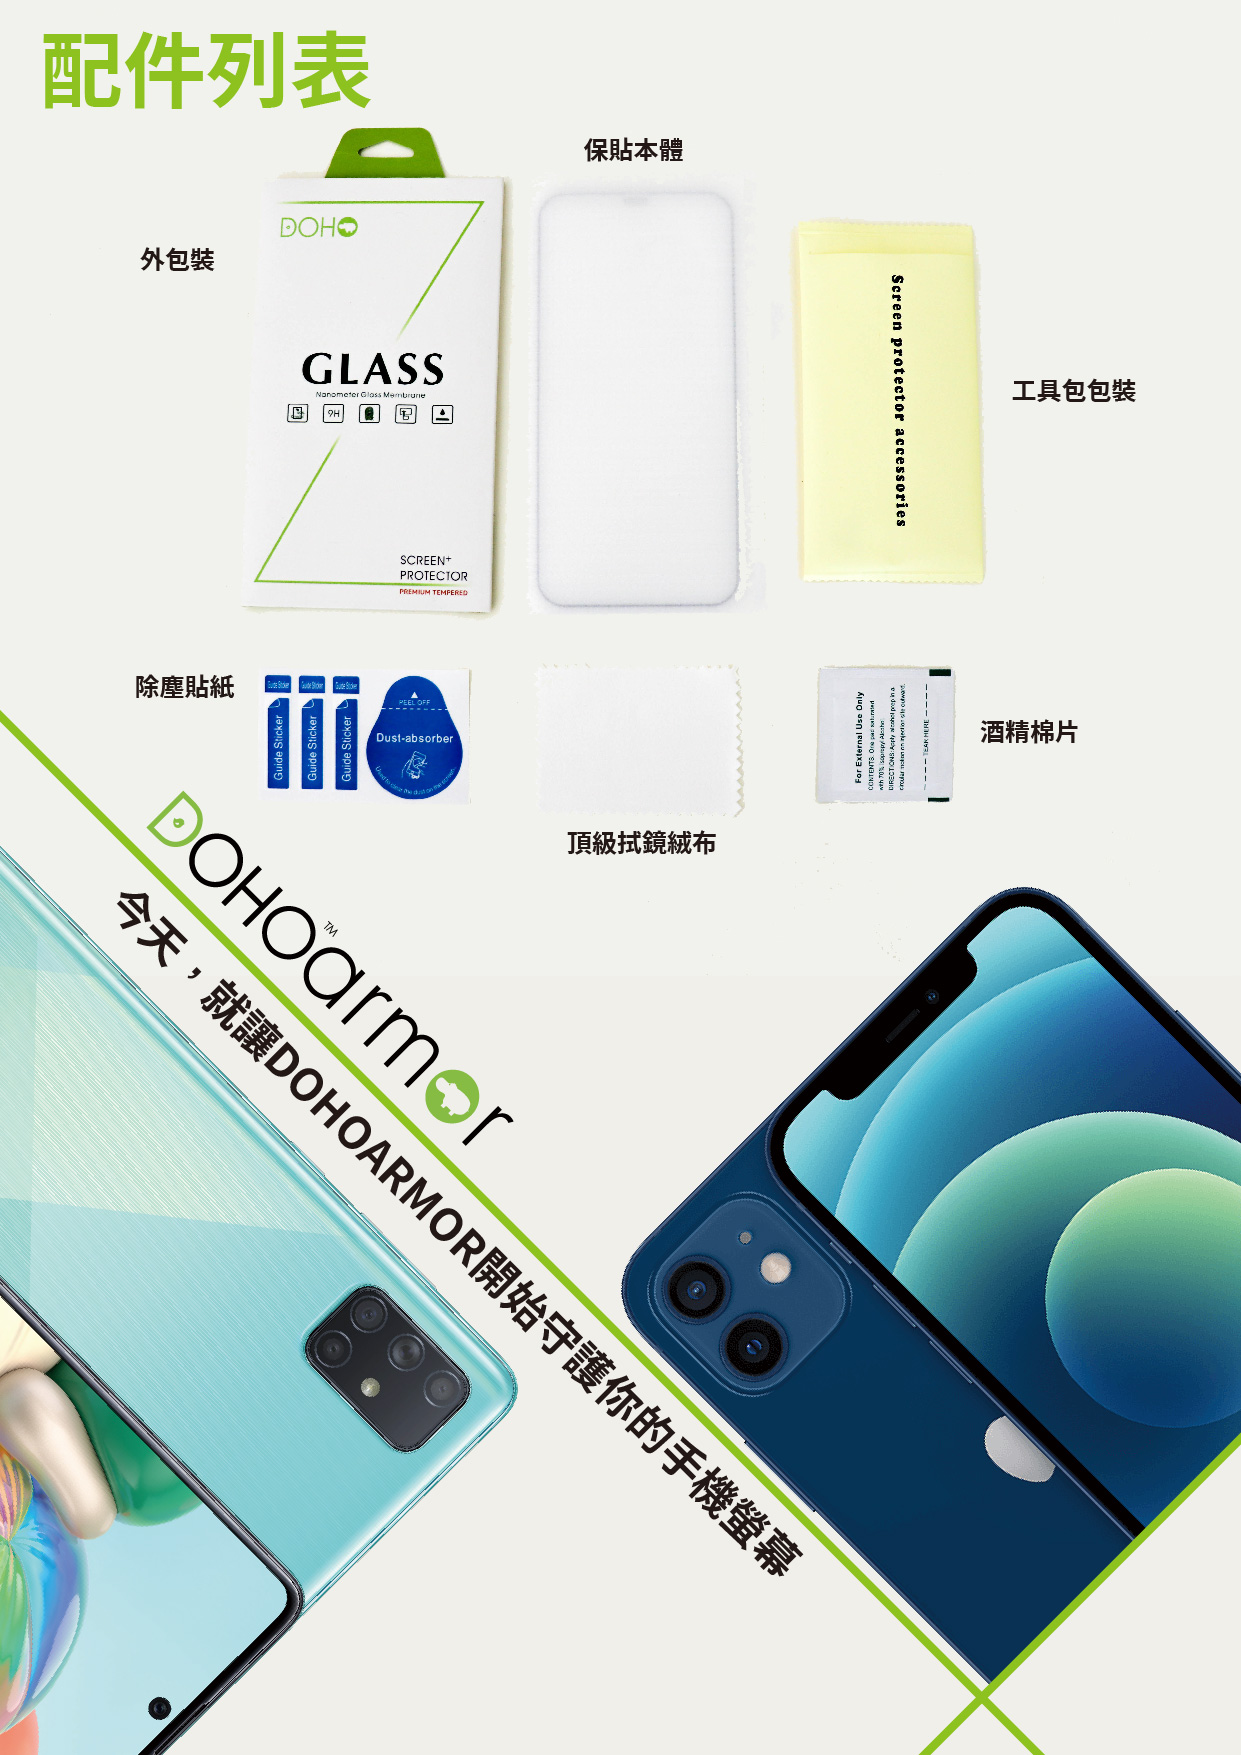 【GOR保護貼】Apple IPhone6 6s 6sPlus 9H滿版鋼化玻璃